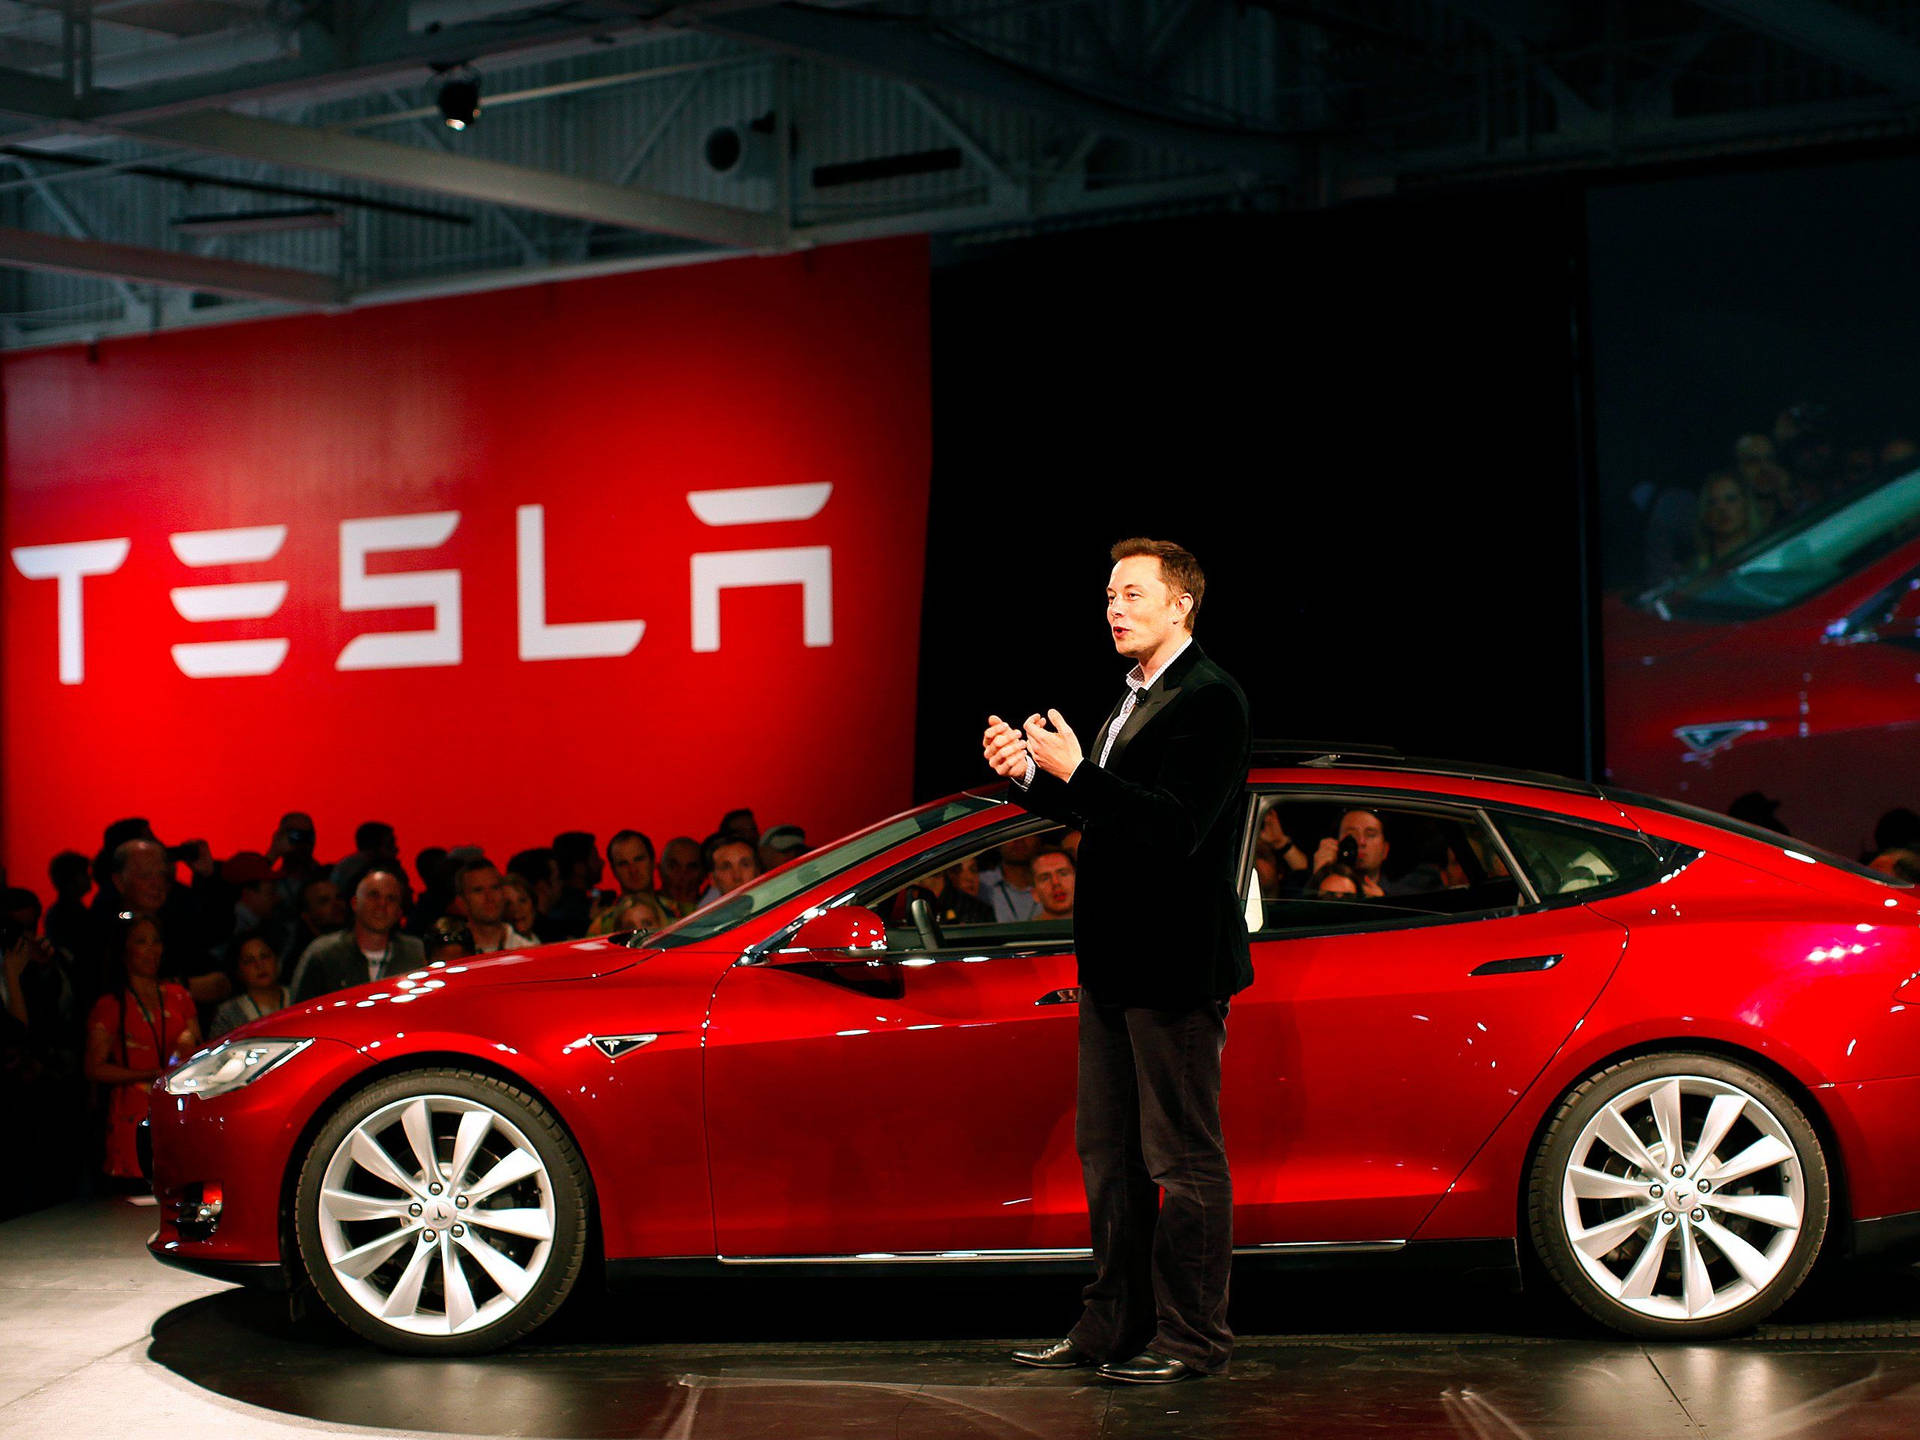 Elon Musk Tesla Model 3 Event Background